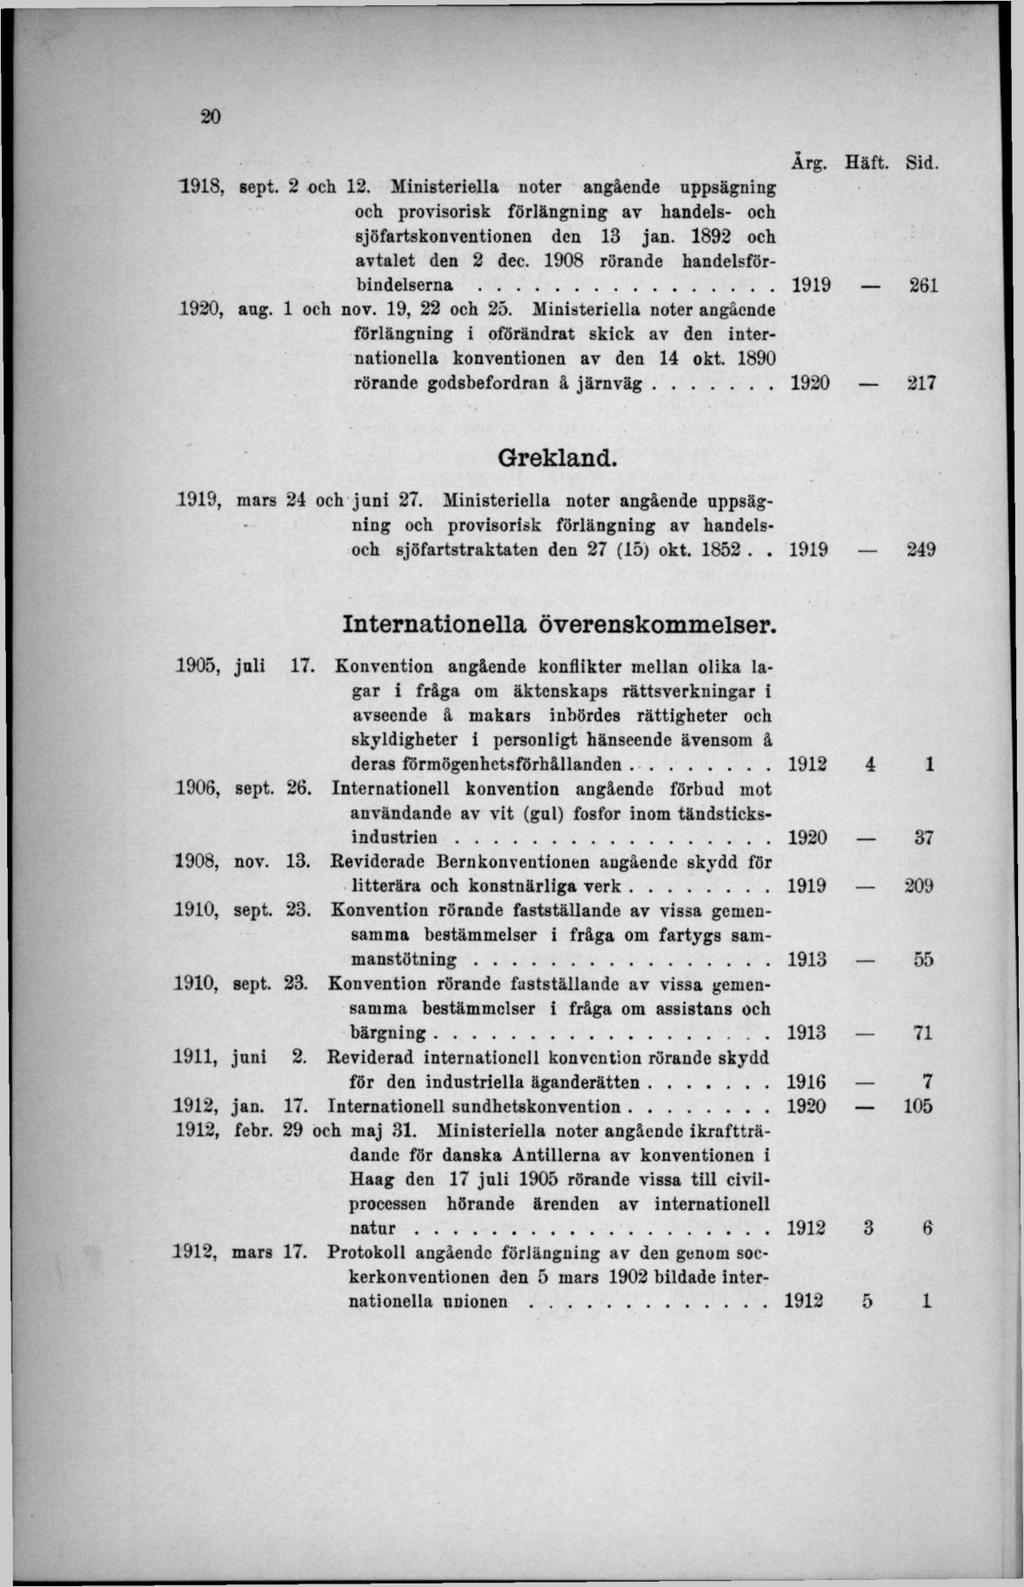 1918, sept. 2 och 12. Ministeriella noter angående uppsägning och provisorisk förlängning av handels- och sjöfartskonvcntionen den 13 jan. 1892 och avtalet den 2 dec.